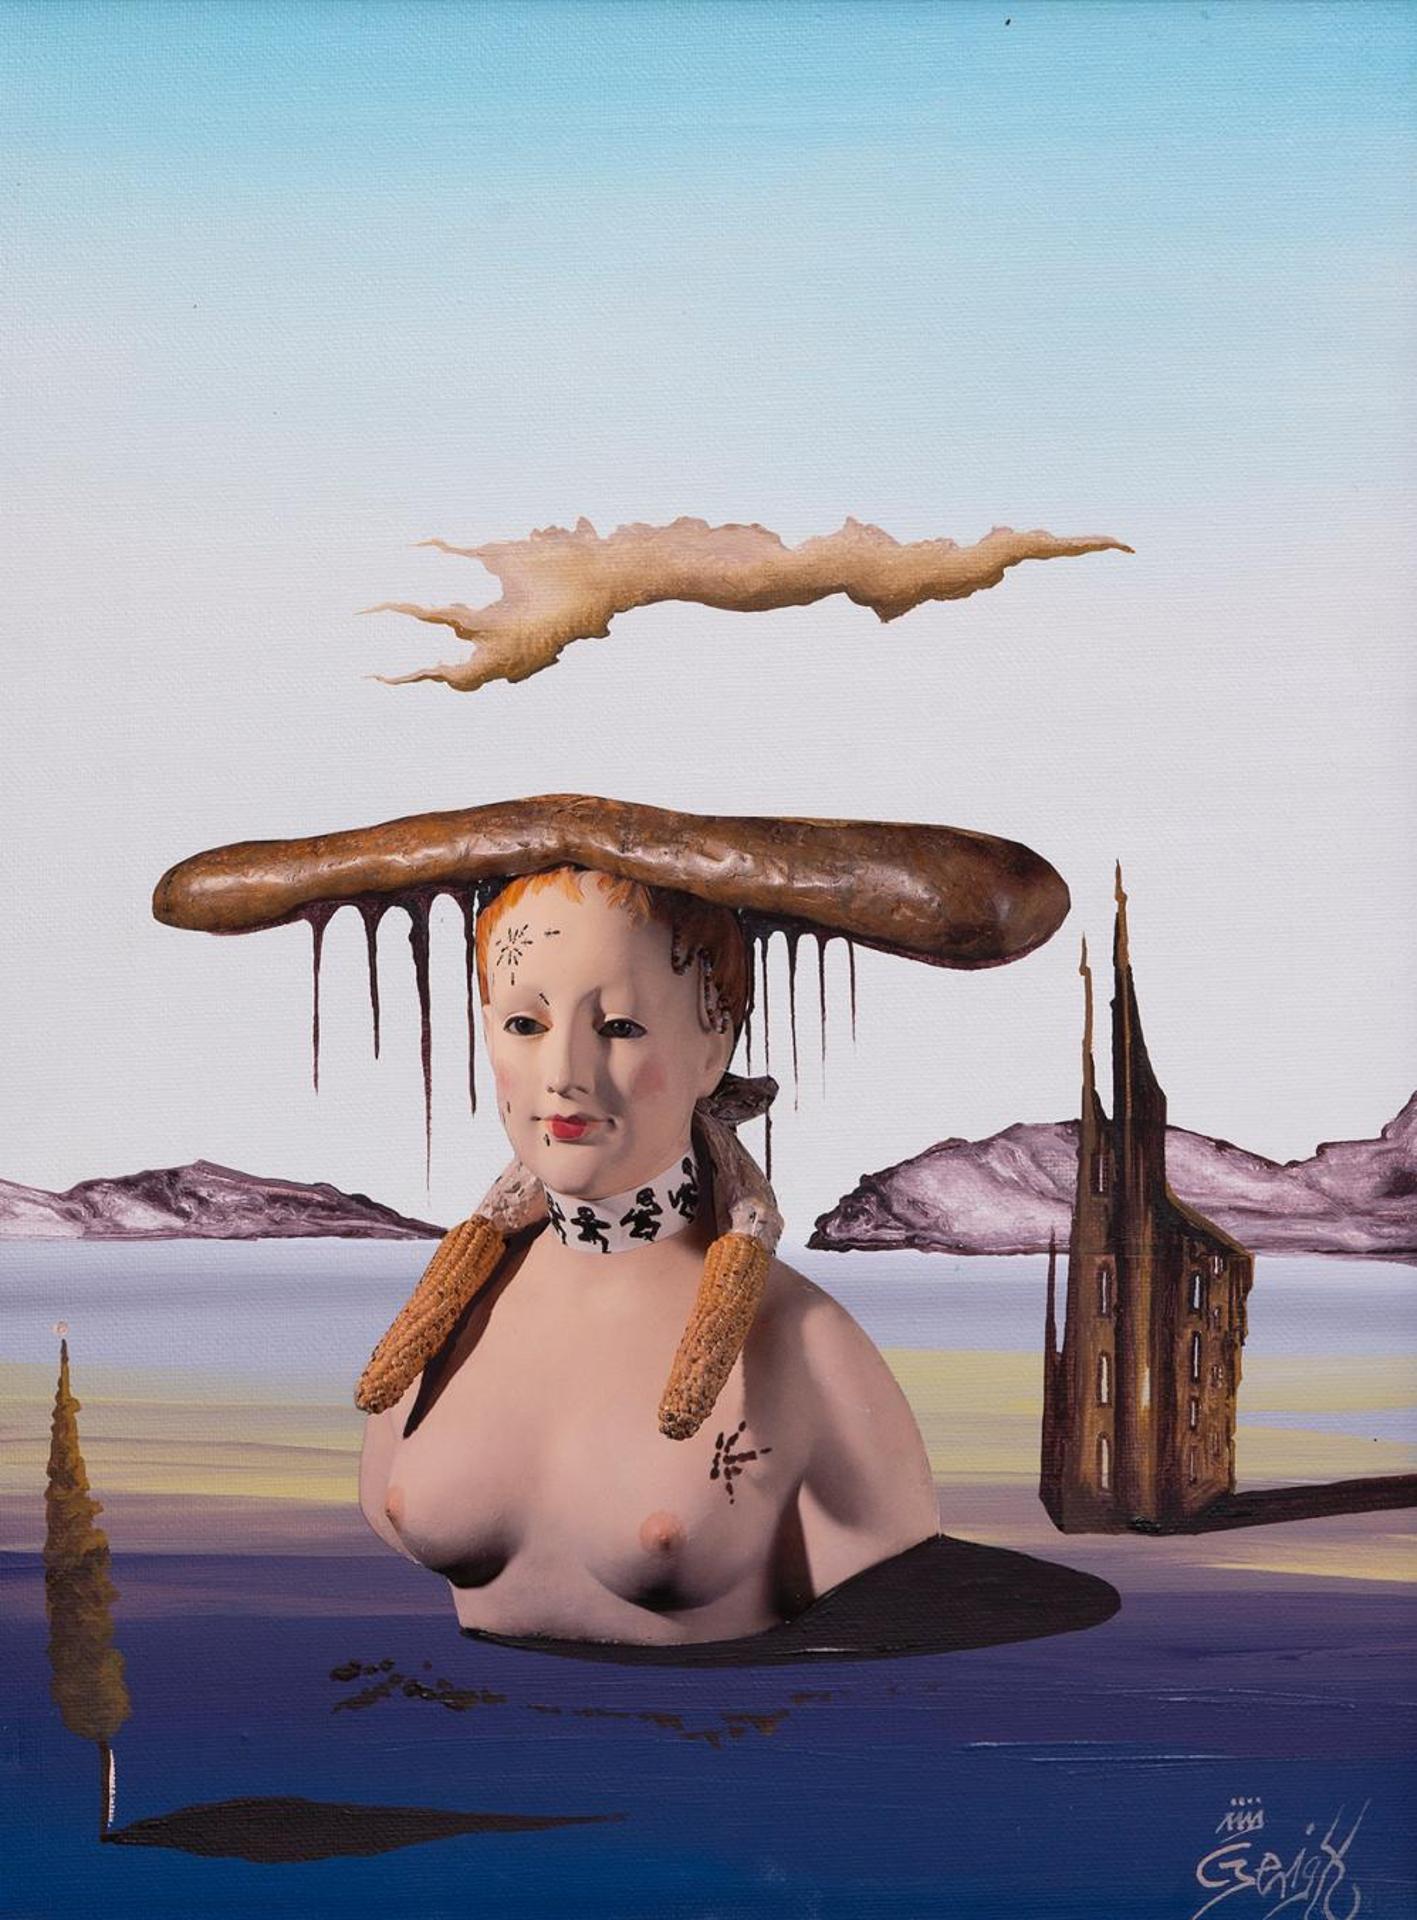 Helmut Gerigk (1953) - Untitled - Surreal Bust